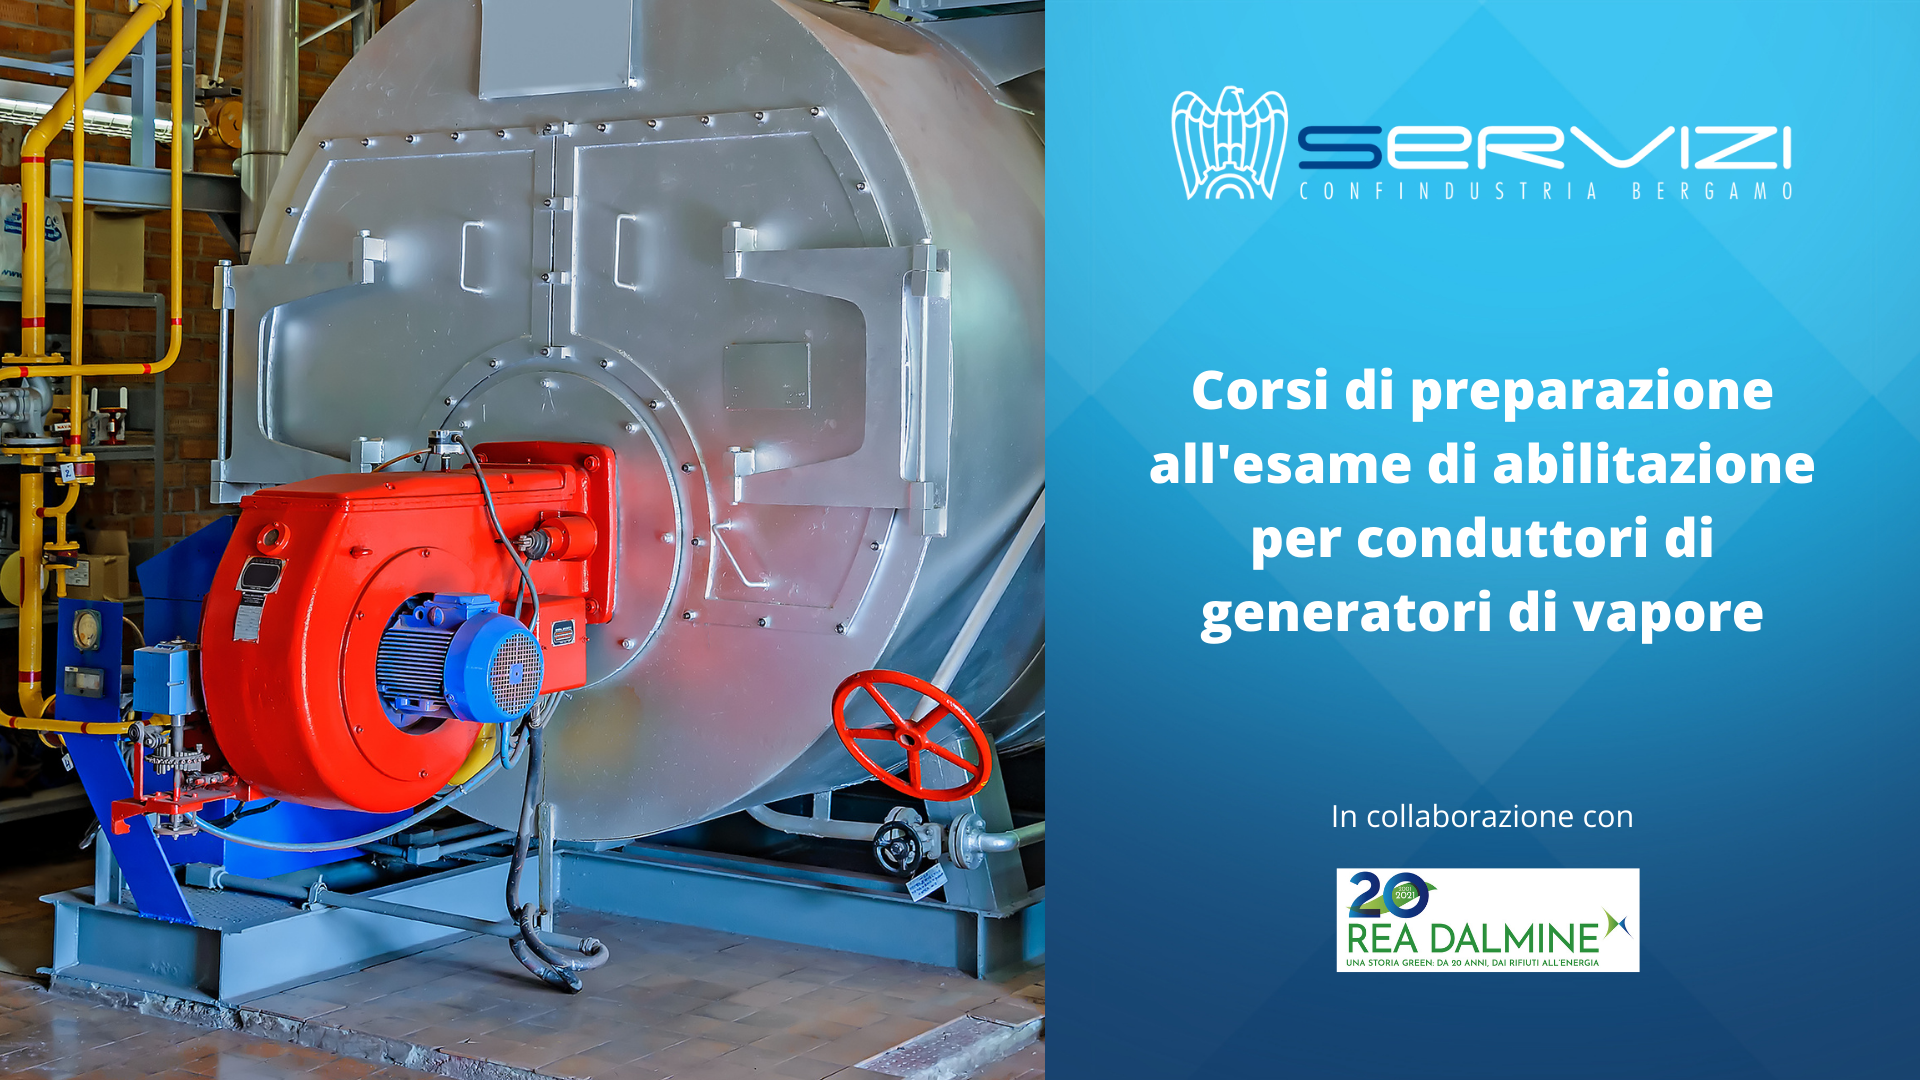 Conduttori Generatori Vapore Servizi Confindustria Bergamo